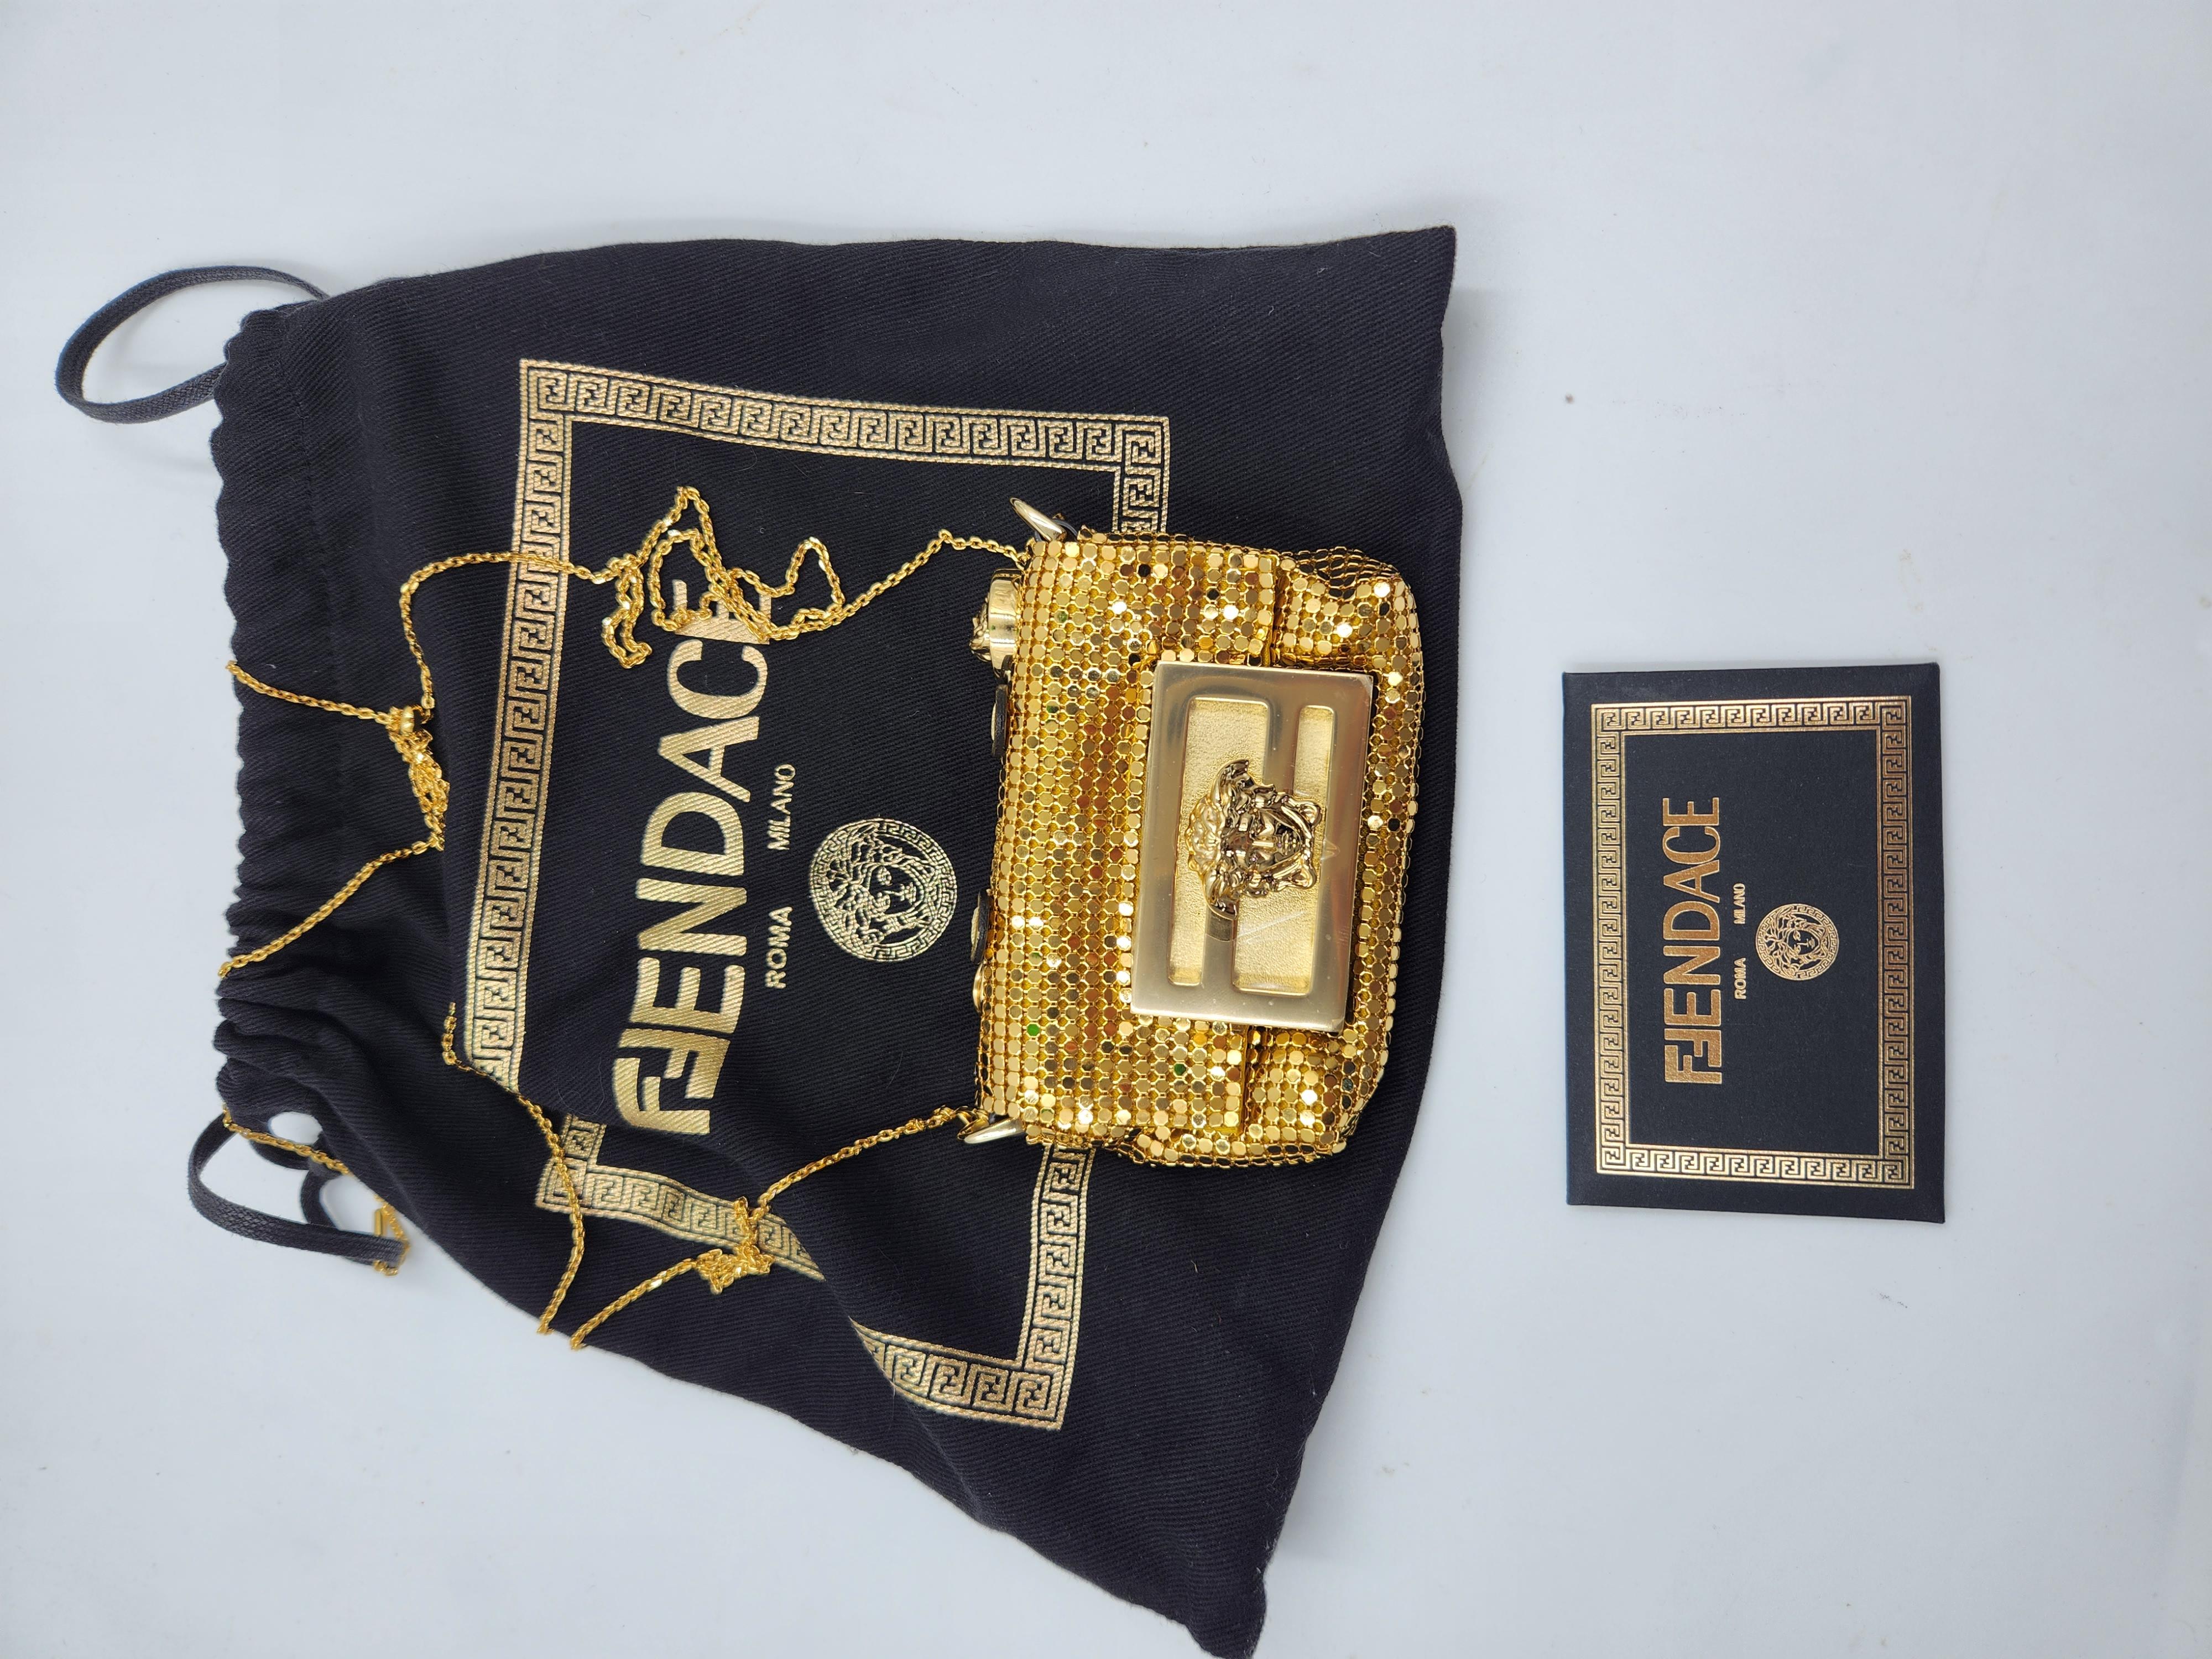 Versace X Fendi Tasche für Sammler, wie man sie von unzähligen Prominenten kennt. Brandneu mit Staubbeutel, vollständiger Satz mit Etiketten,

Merkmal
MATERIAL: Masche, Metall
Farbe: Gold
Zustand: Brandneu
Zeitraum: 2022
Größe:Mini Card Wallet